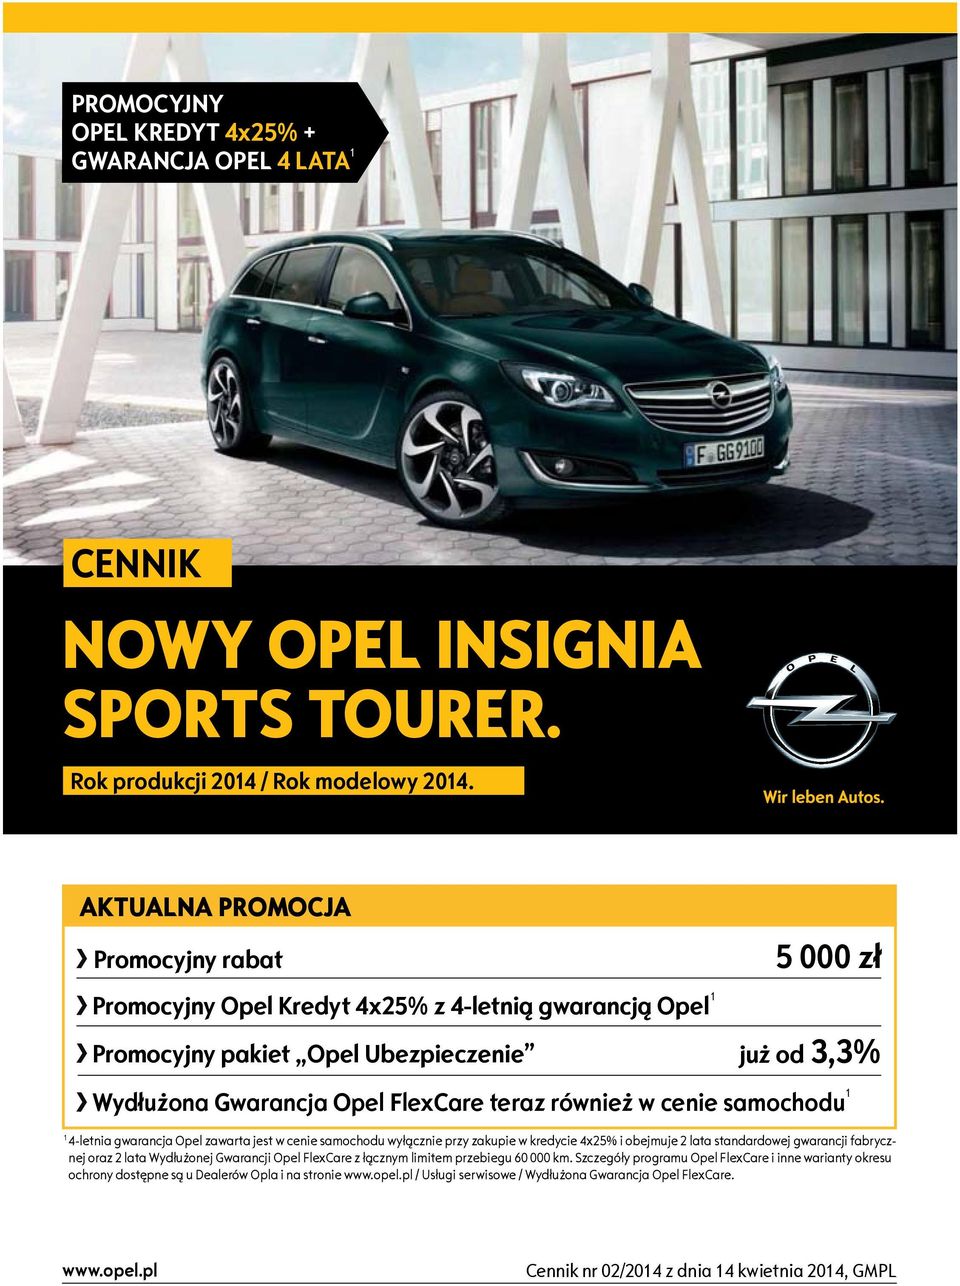 cenie samochodu 1 1 4-letnia gwarancja Opel zawarta jest w cenie samochodu wyłącznie zakupie w kredycie 4x25% i obejmuje 2 lata standardowej gwarancji fabrycznej oraz 2 lata Wydłużonej Gwarancji Opel